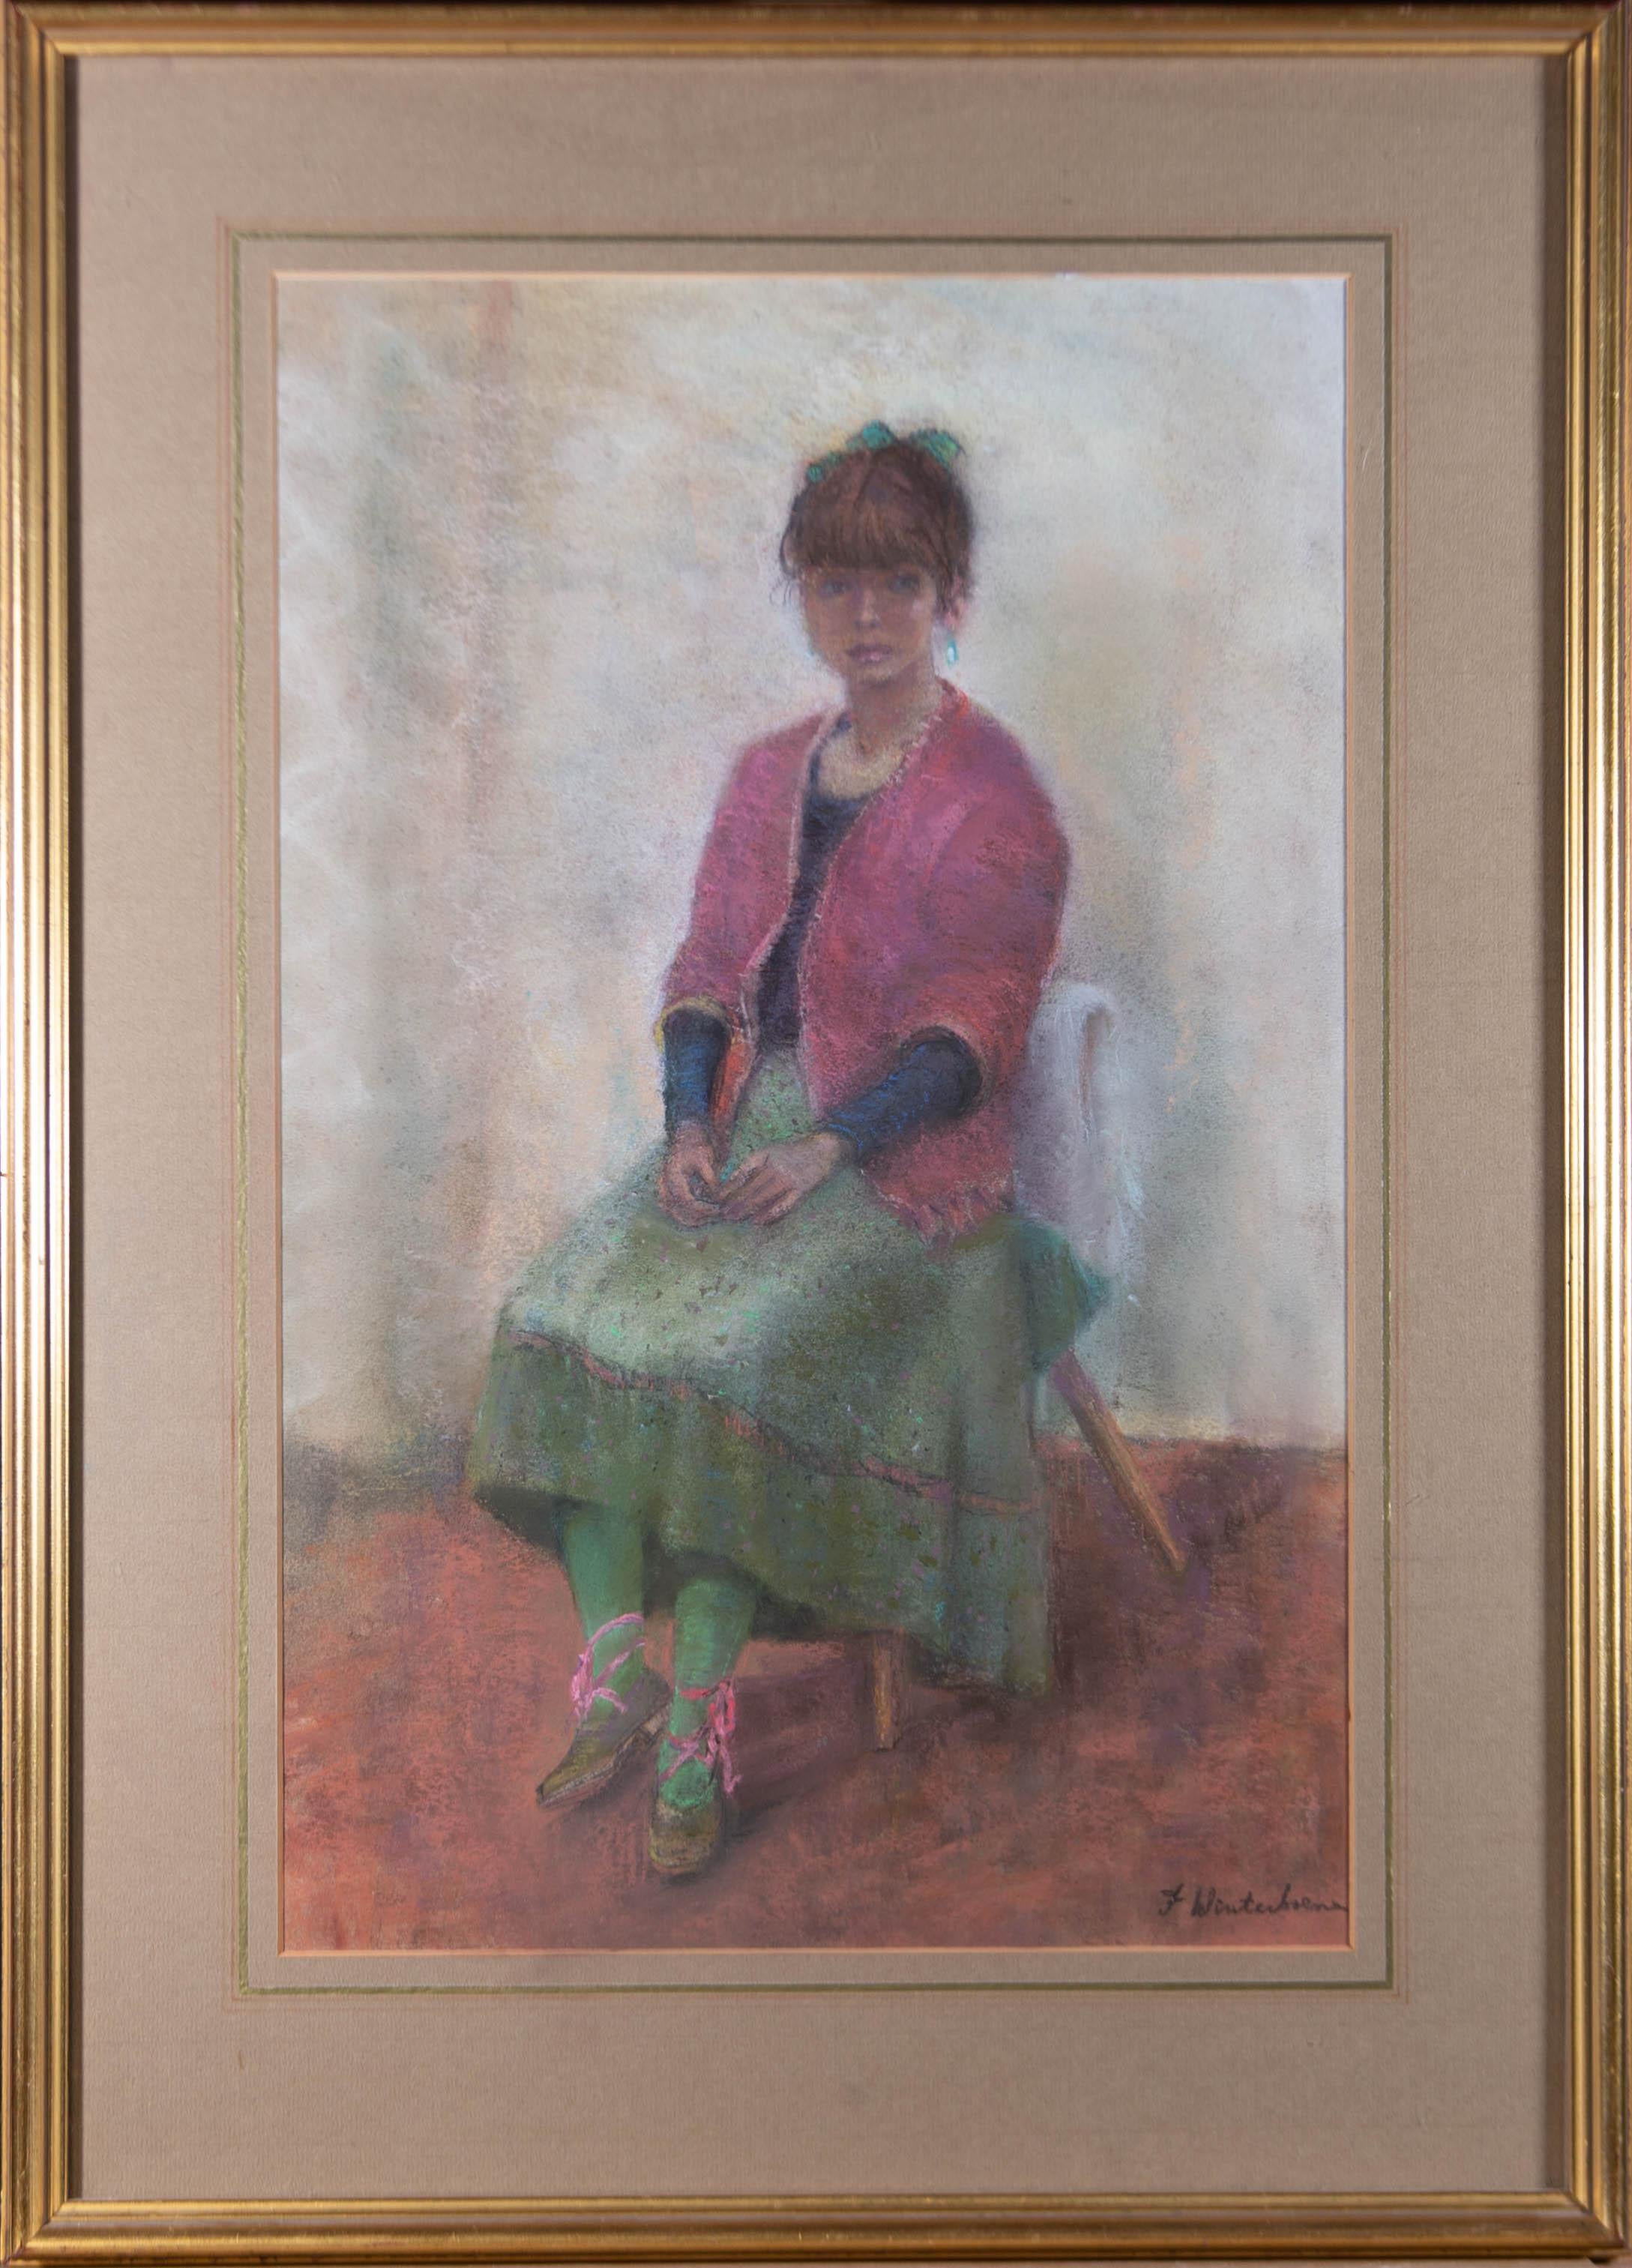 Ein sehr hübsches Porträt in einer wunderbaren Farbpalette, das ein junges Mädchen zeigt, das elegant auf einem Holzstuhl sitzt und die Hände in die Lampe hält. Sie trägt eine rosa Strickjacke, einen grünen Rock, eine grüne Strumpfhose und rosa